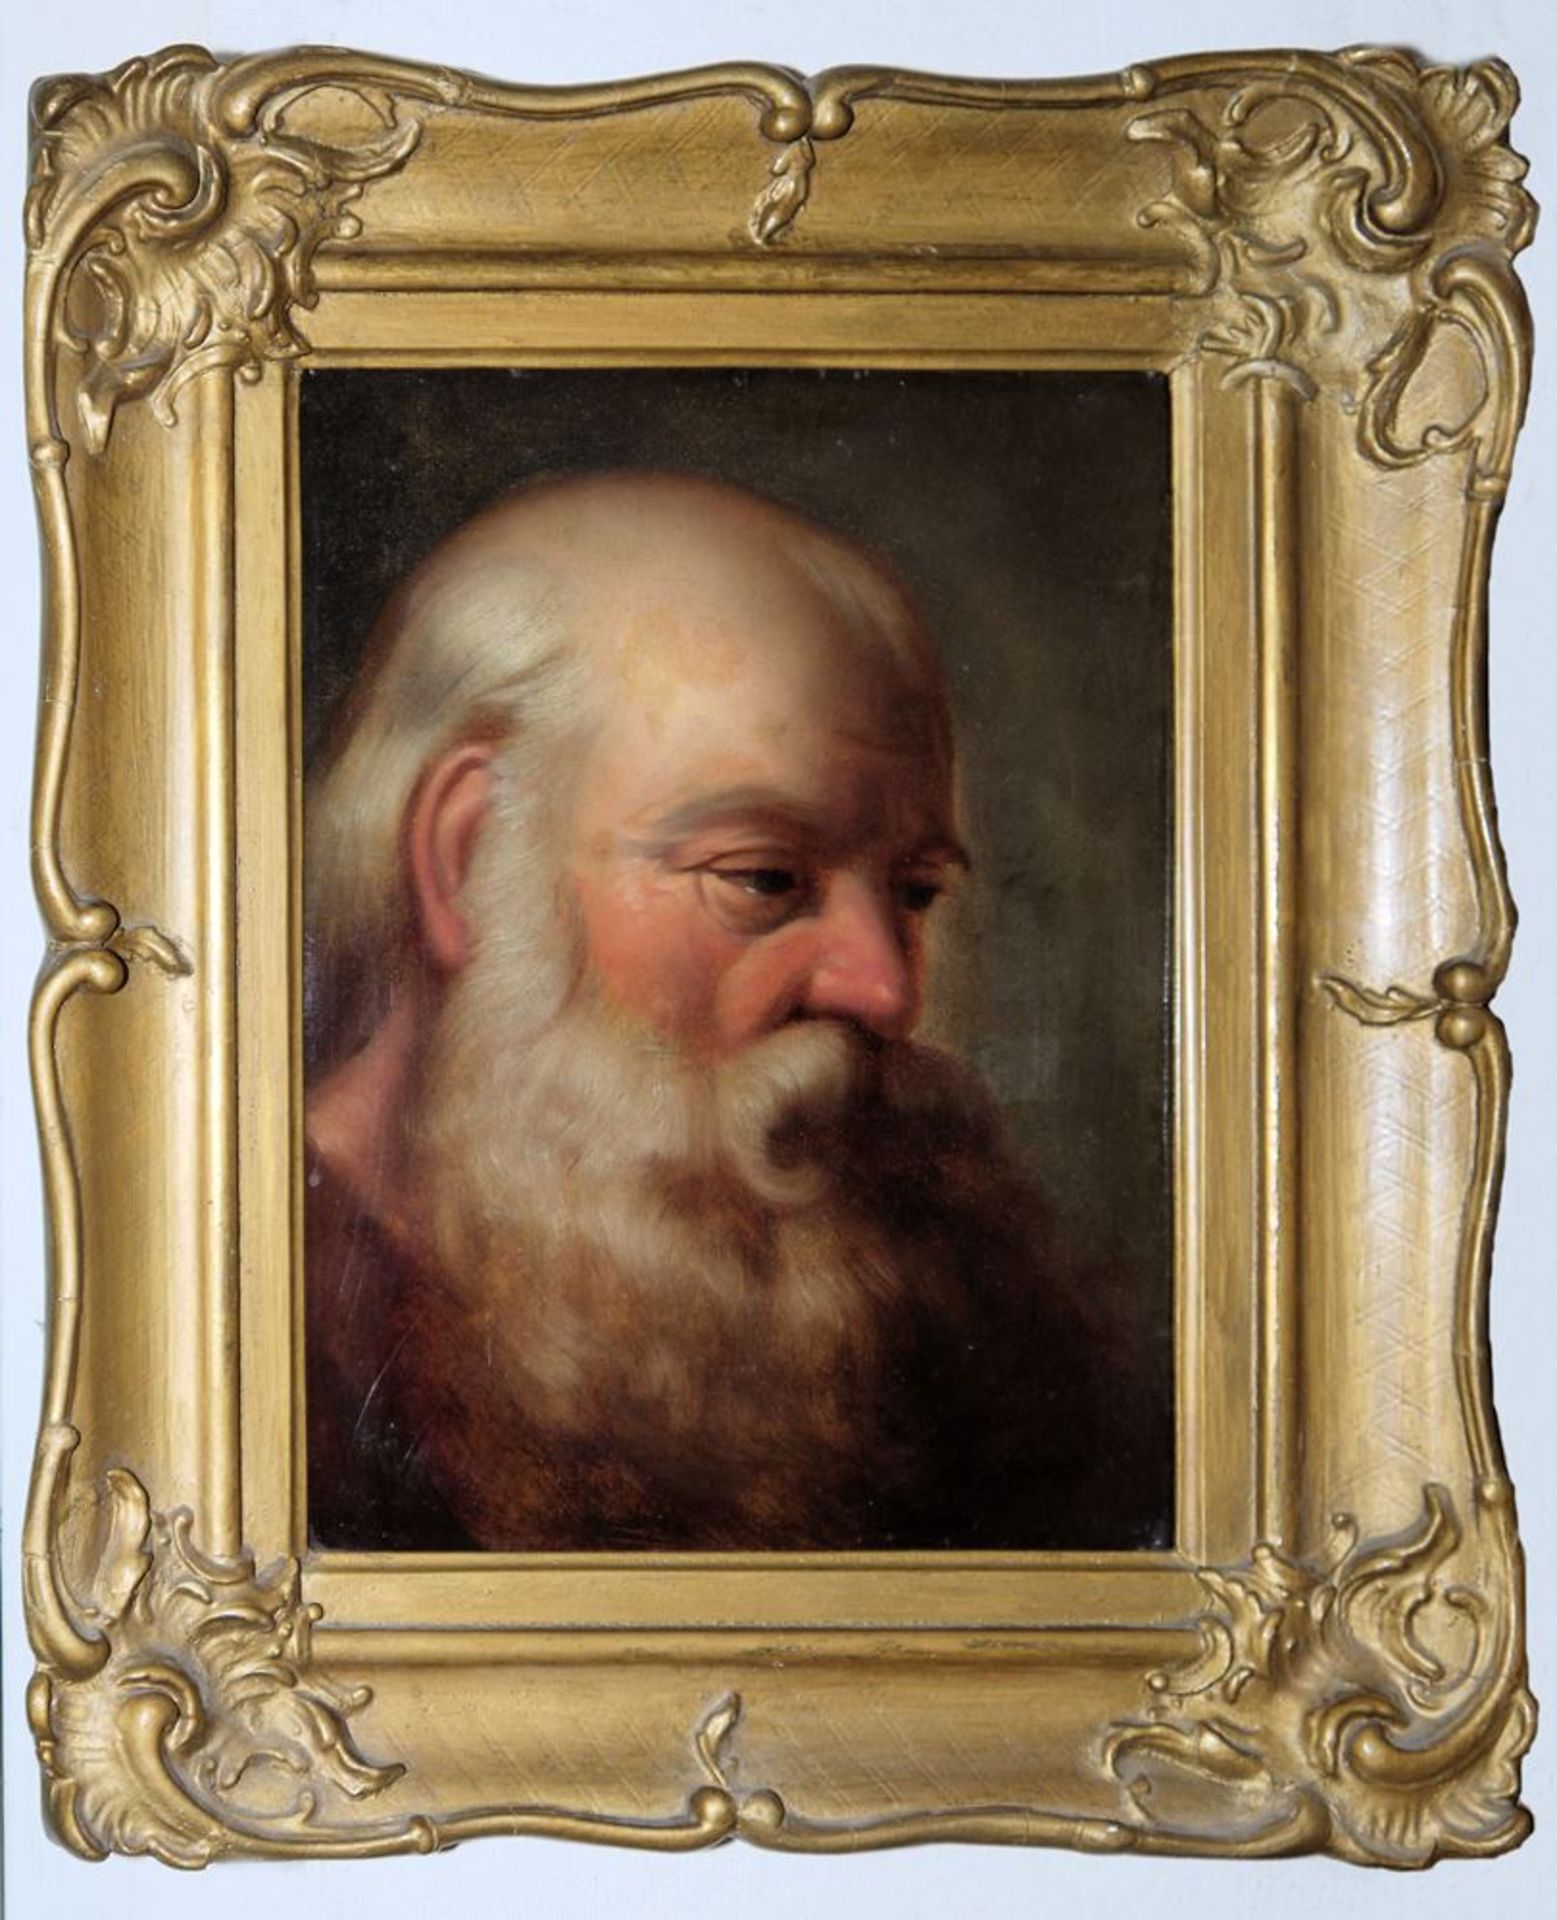 John H. Thompson, Charakterkopf eines alten bärtigen Mannes, Ölgemälde von 1853